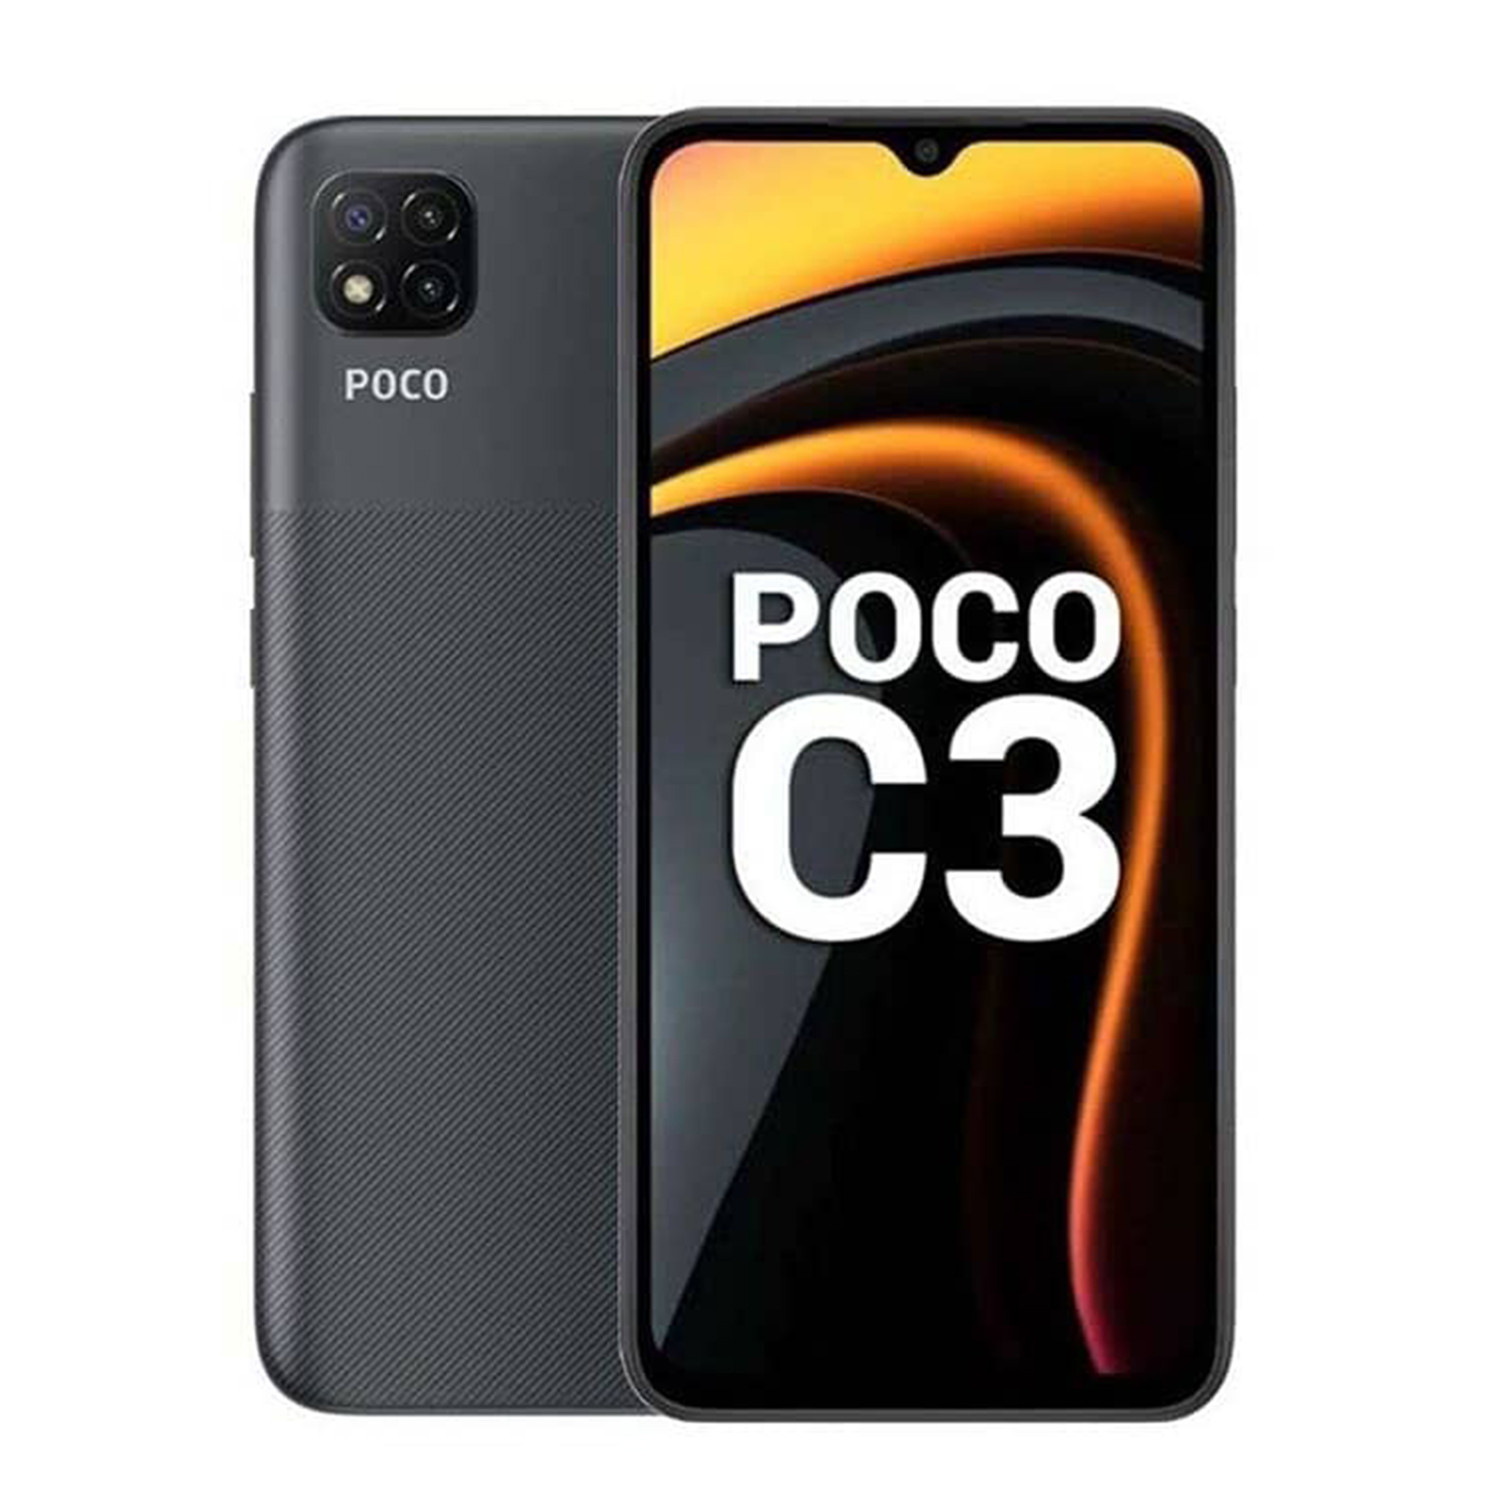 گوشی موبایل شیائومی مدل Poco C3 ظرفیت 32 گیگابایت و 3 گیگابایت رم